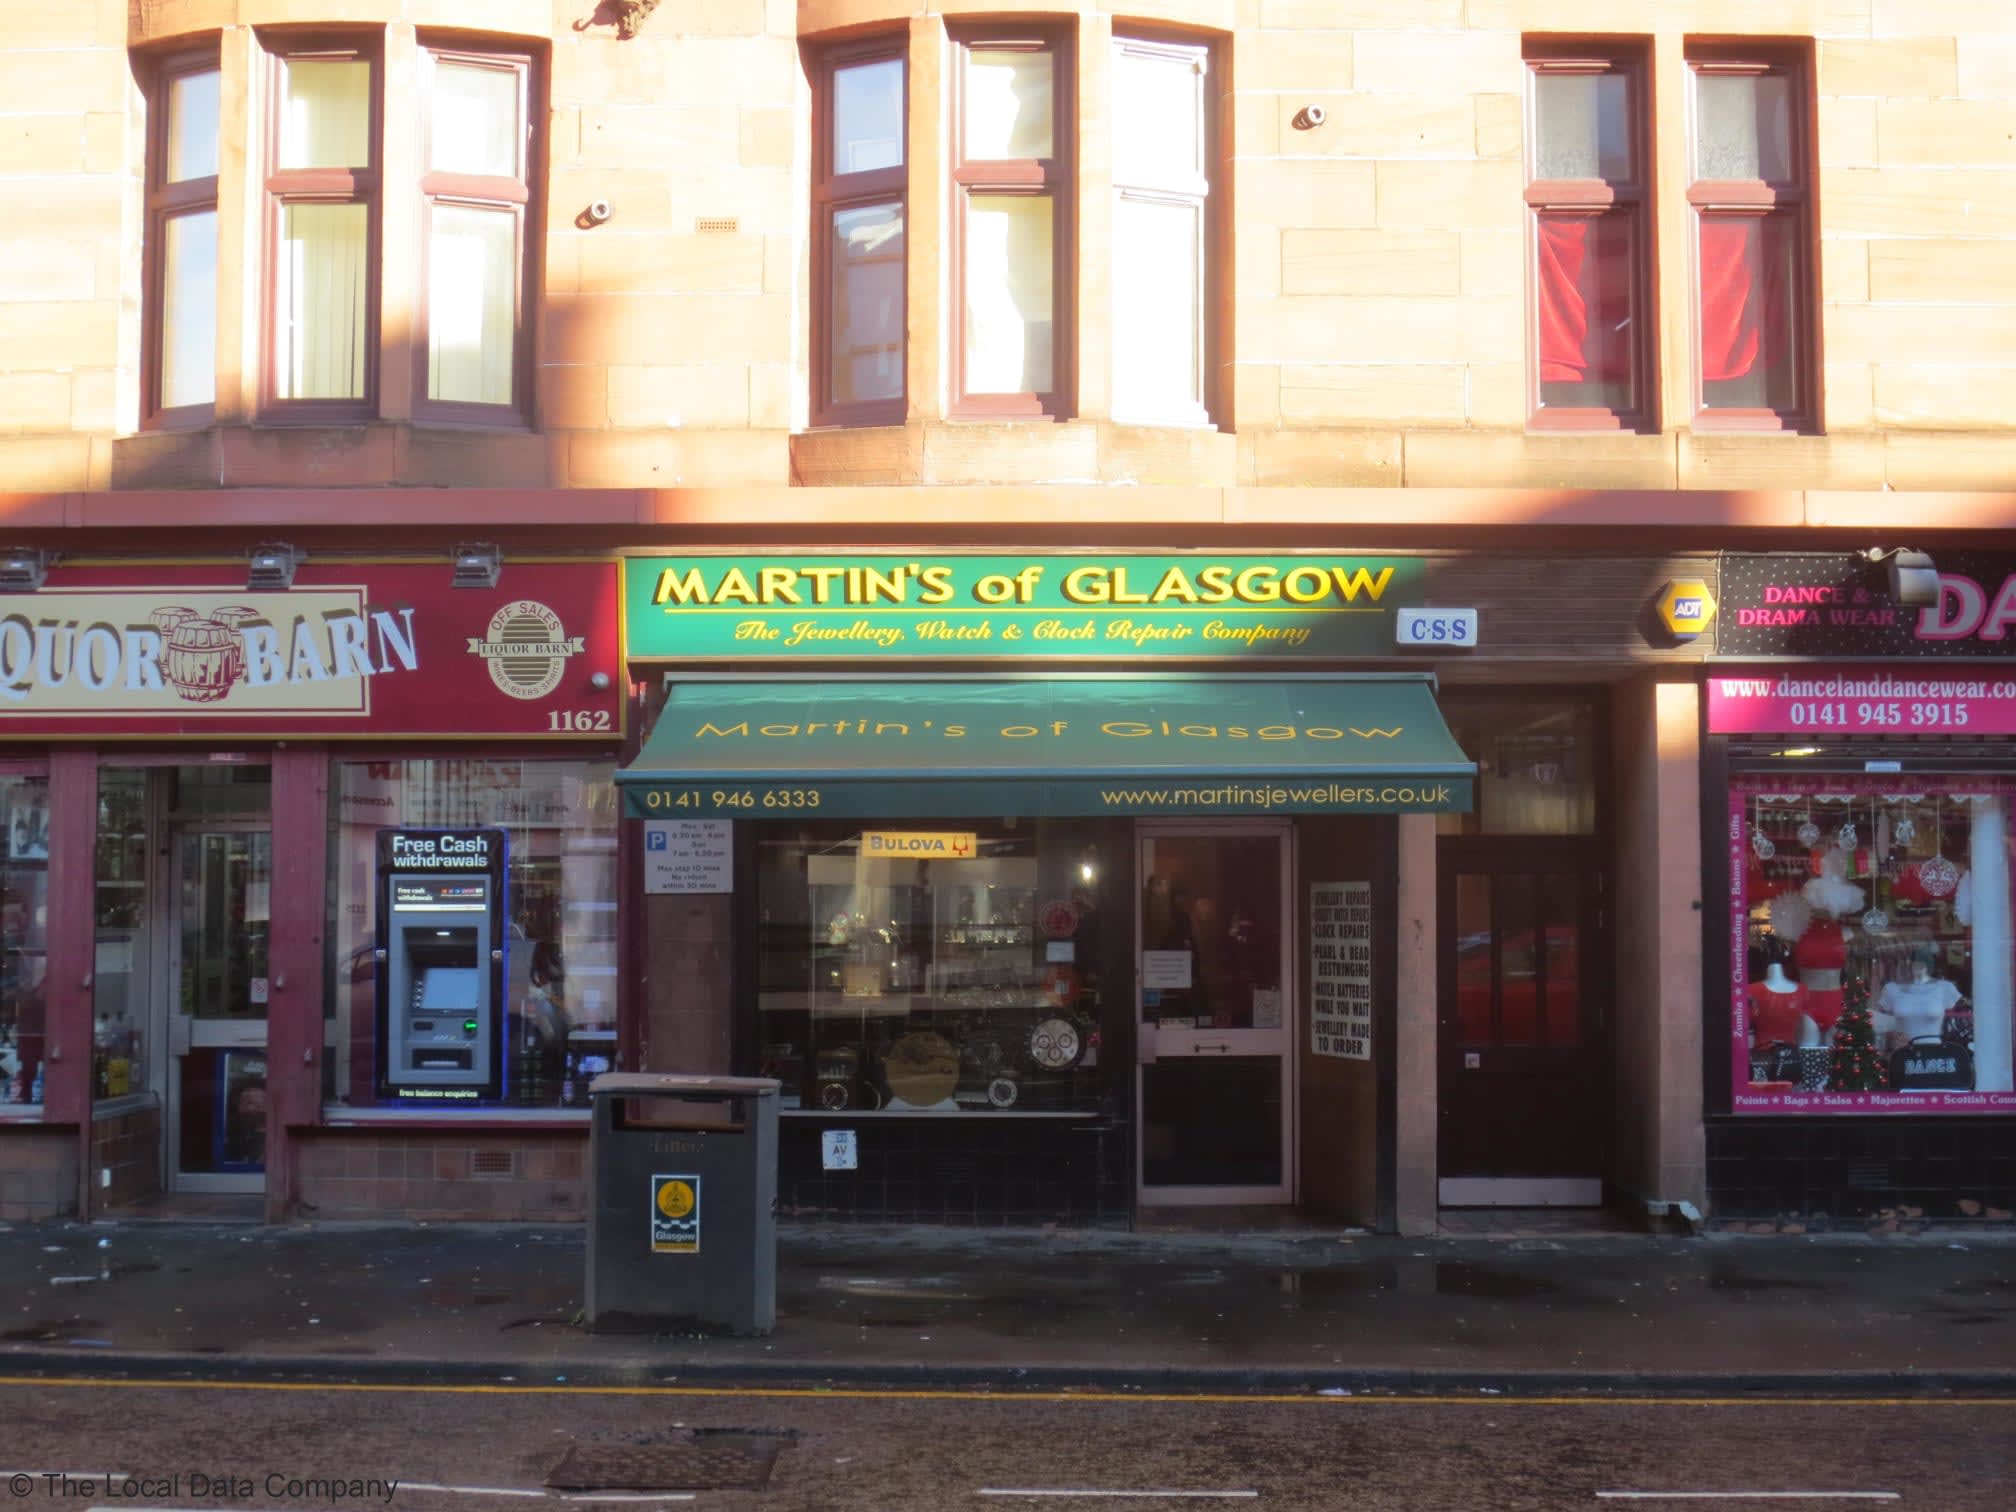 Martin's of Glasgow Glasgow 01419 466333